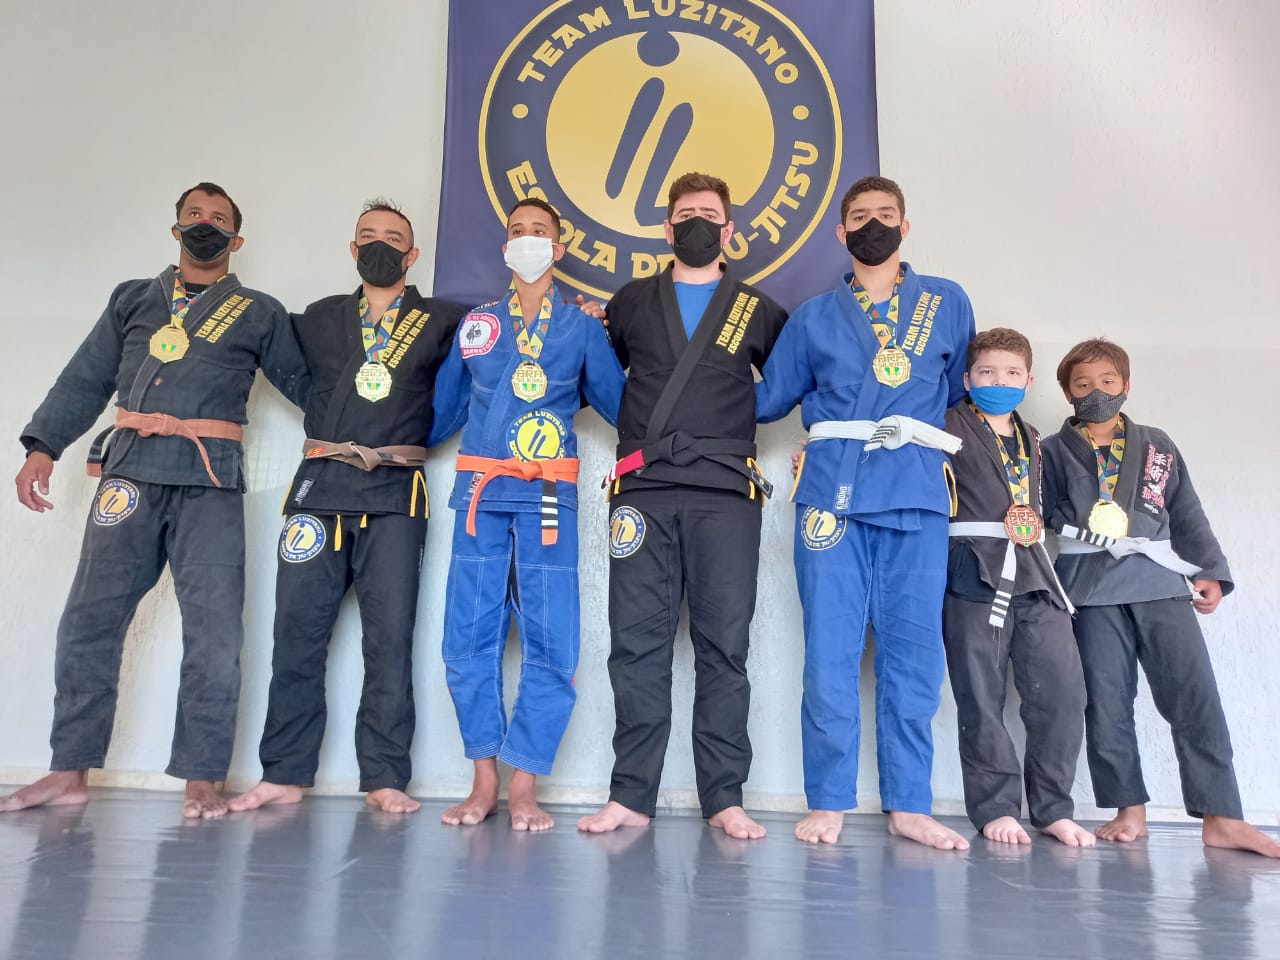 Equipe de Jiu Jitsu de Barretos conquista sete medalhas em competição